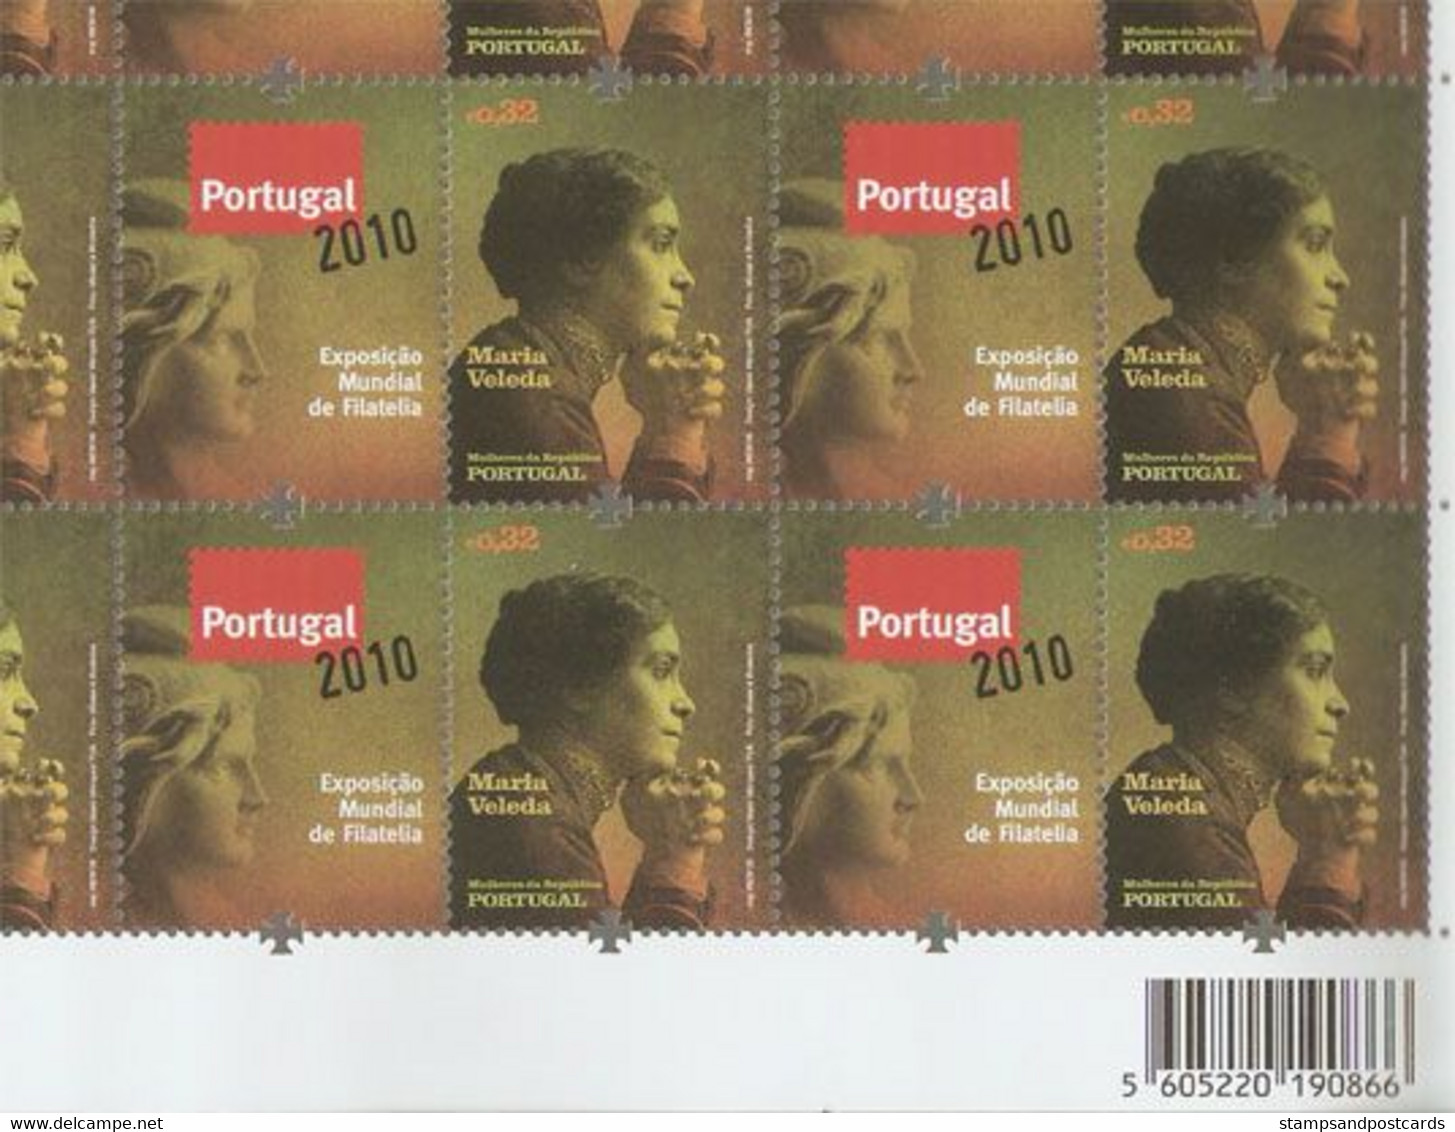 Portugal Femmes Remarquable 1ère République Feuille Cpl. Timbre Vignette Corporate 2009 ** Remarkable Women Stamp + Tab - Feuilles Complètes Et Multiples